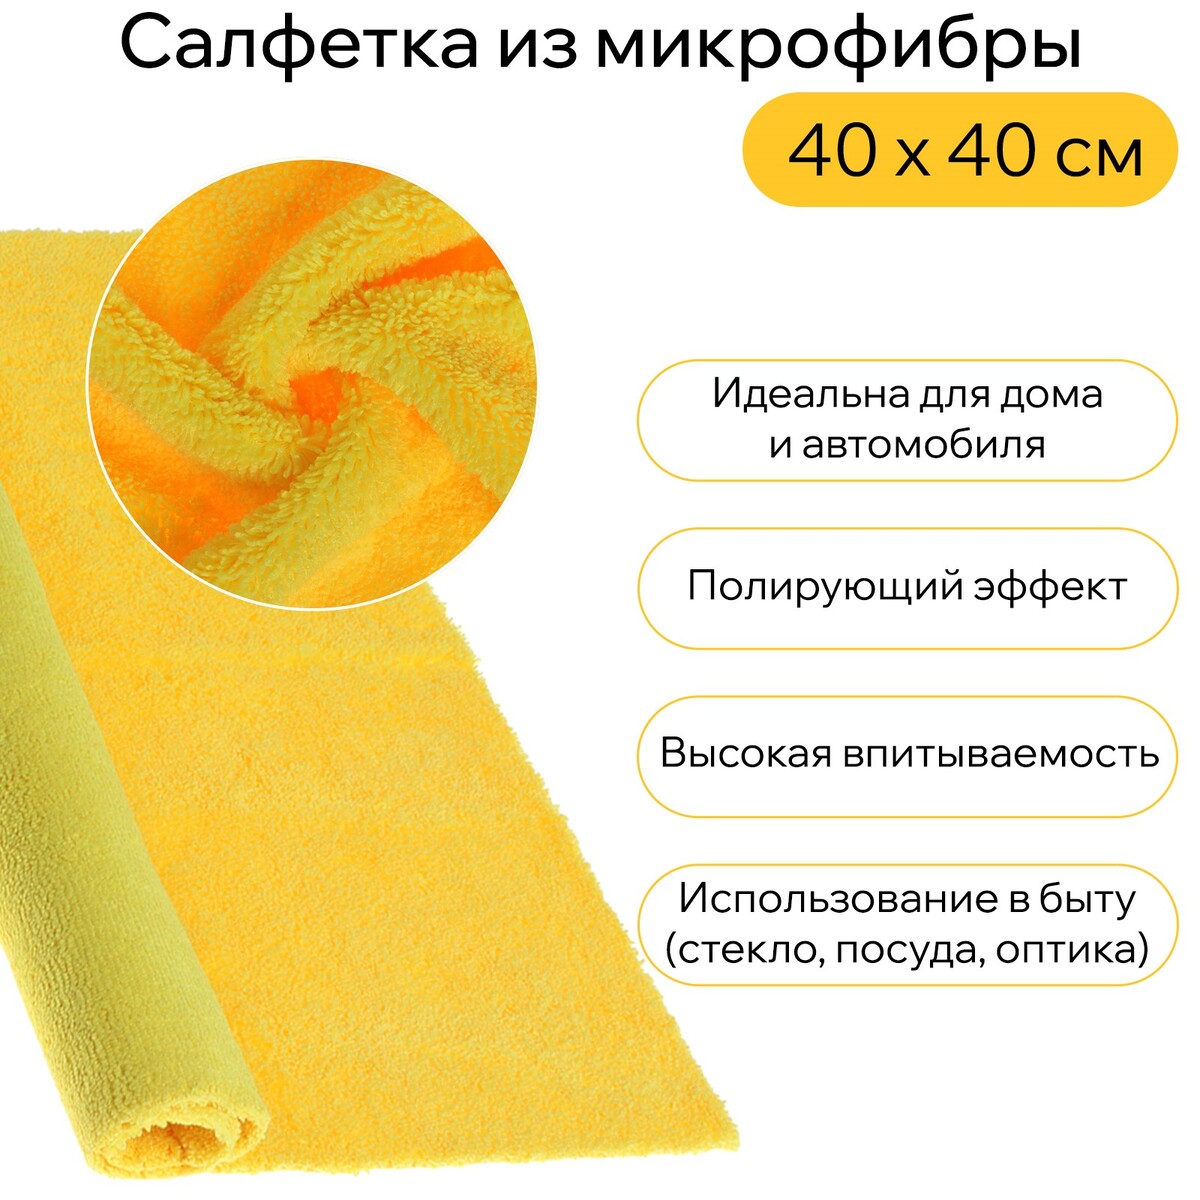 Салфетка из мягкой микрофибры пушистая, полирующая, 40 х 40 см, 400 г/м2, желтая салфетка из мягкой микрофибры пушистая полирующая 40 х 40 см 400 г м2 желтая